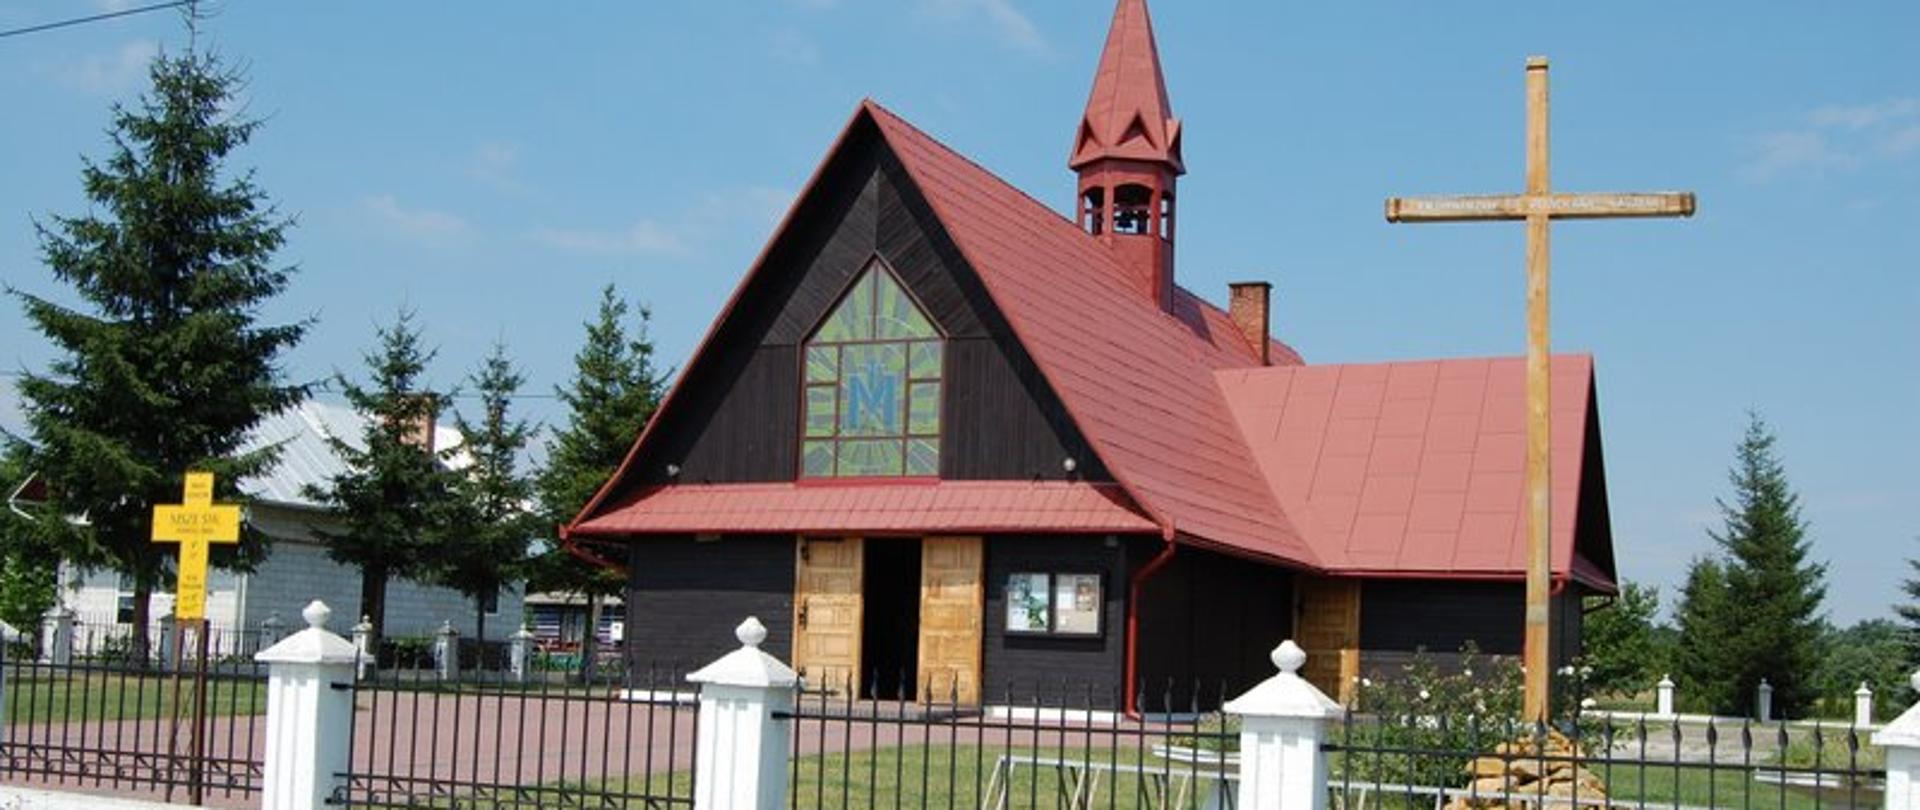 Drewniany, brązowy kościół z czerwonym dachem i wieżyczką. Z przodu budynku duże witrażowe okno. Przed kościołem drewniany krzyż. 